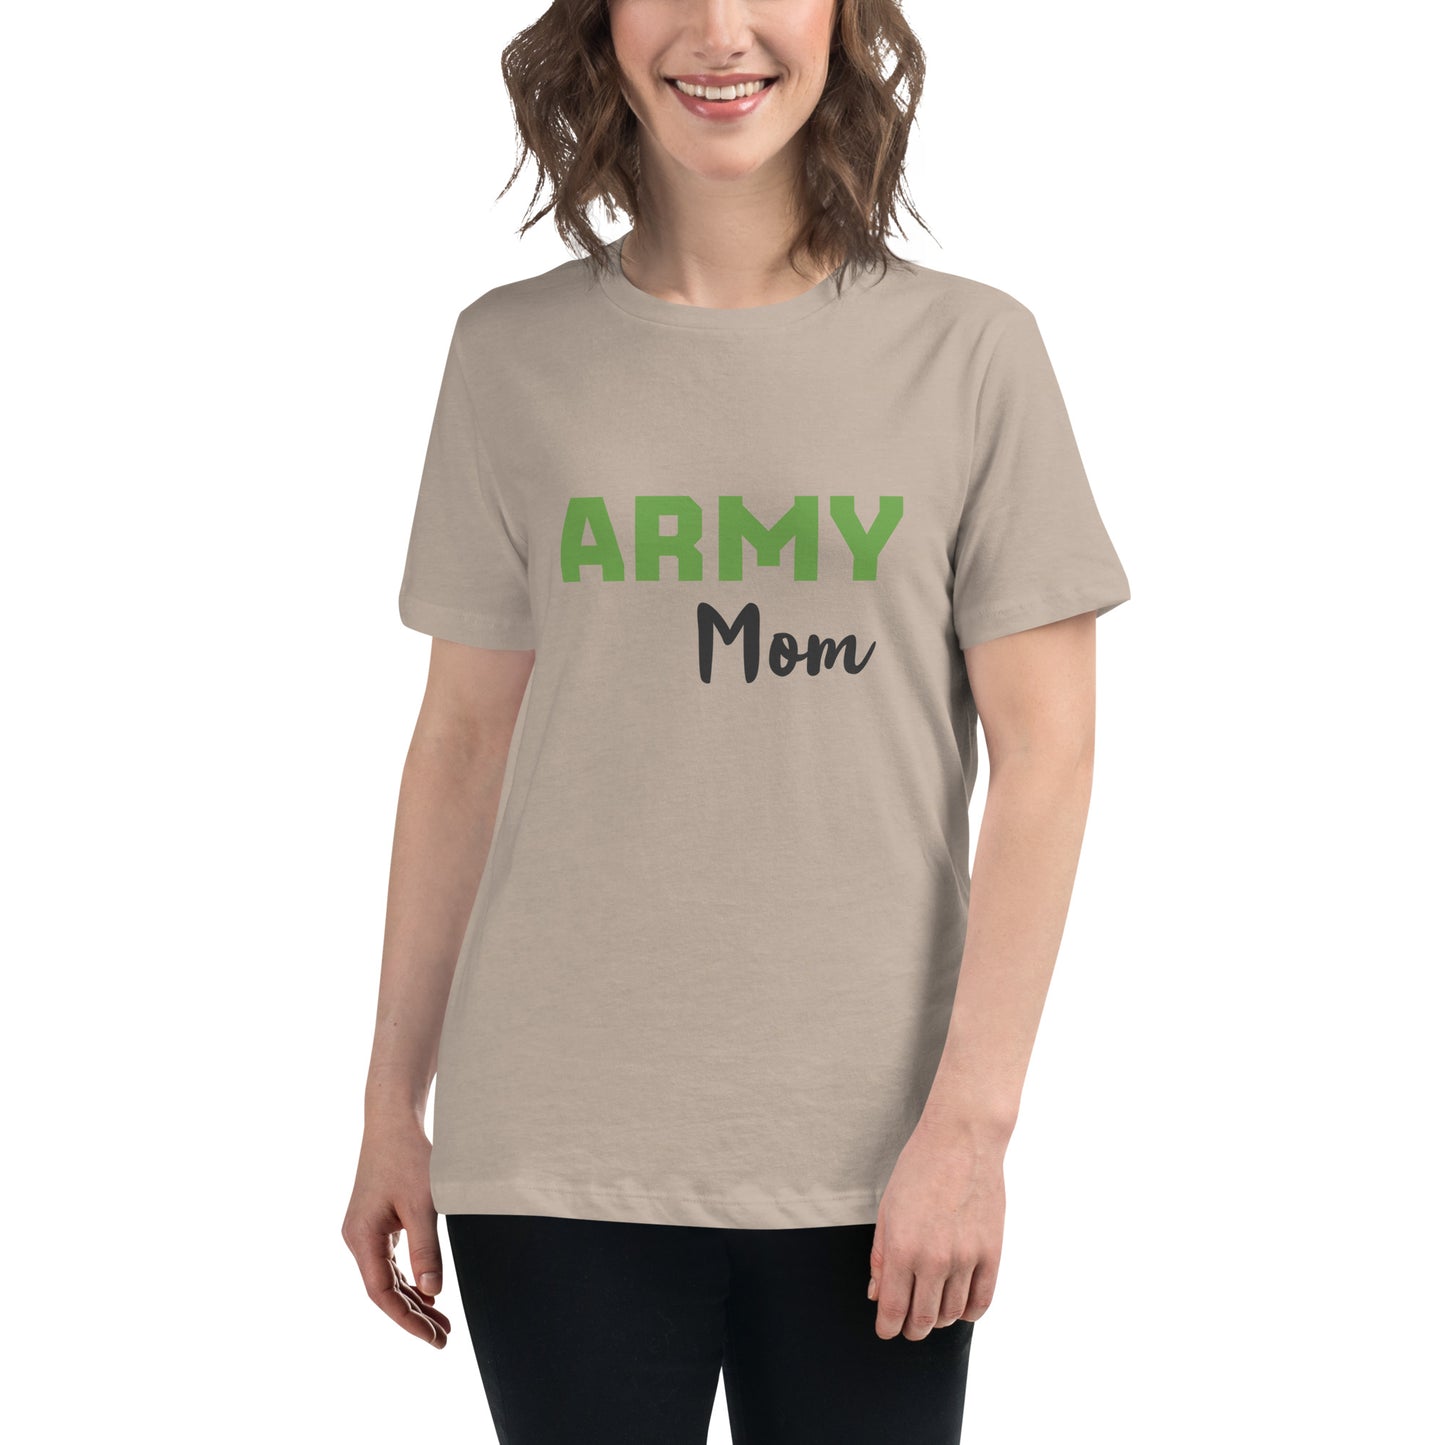 Army Mom Printed T-Shirt